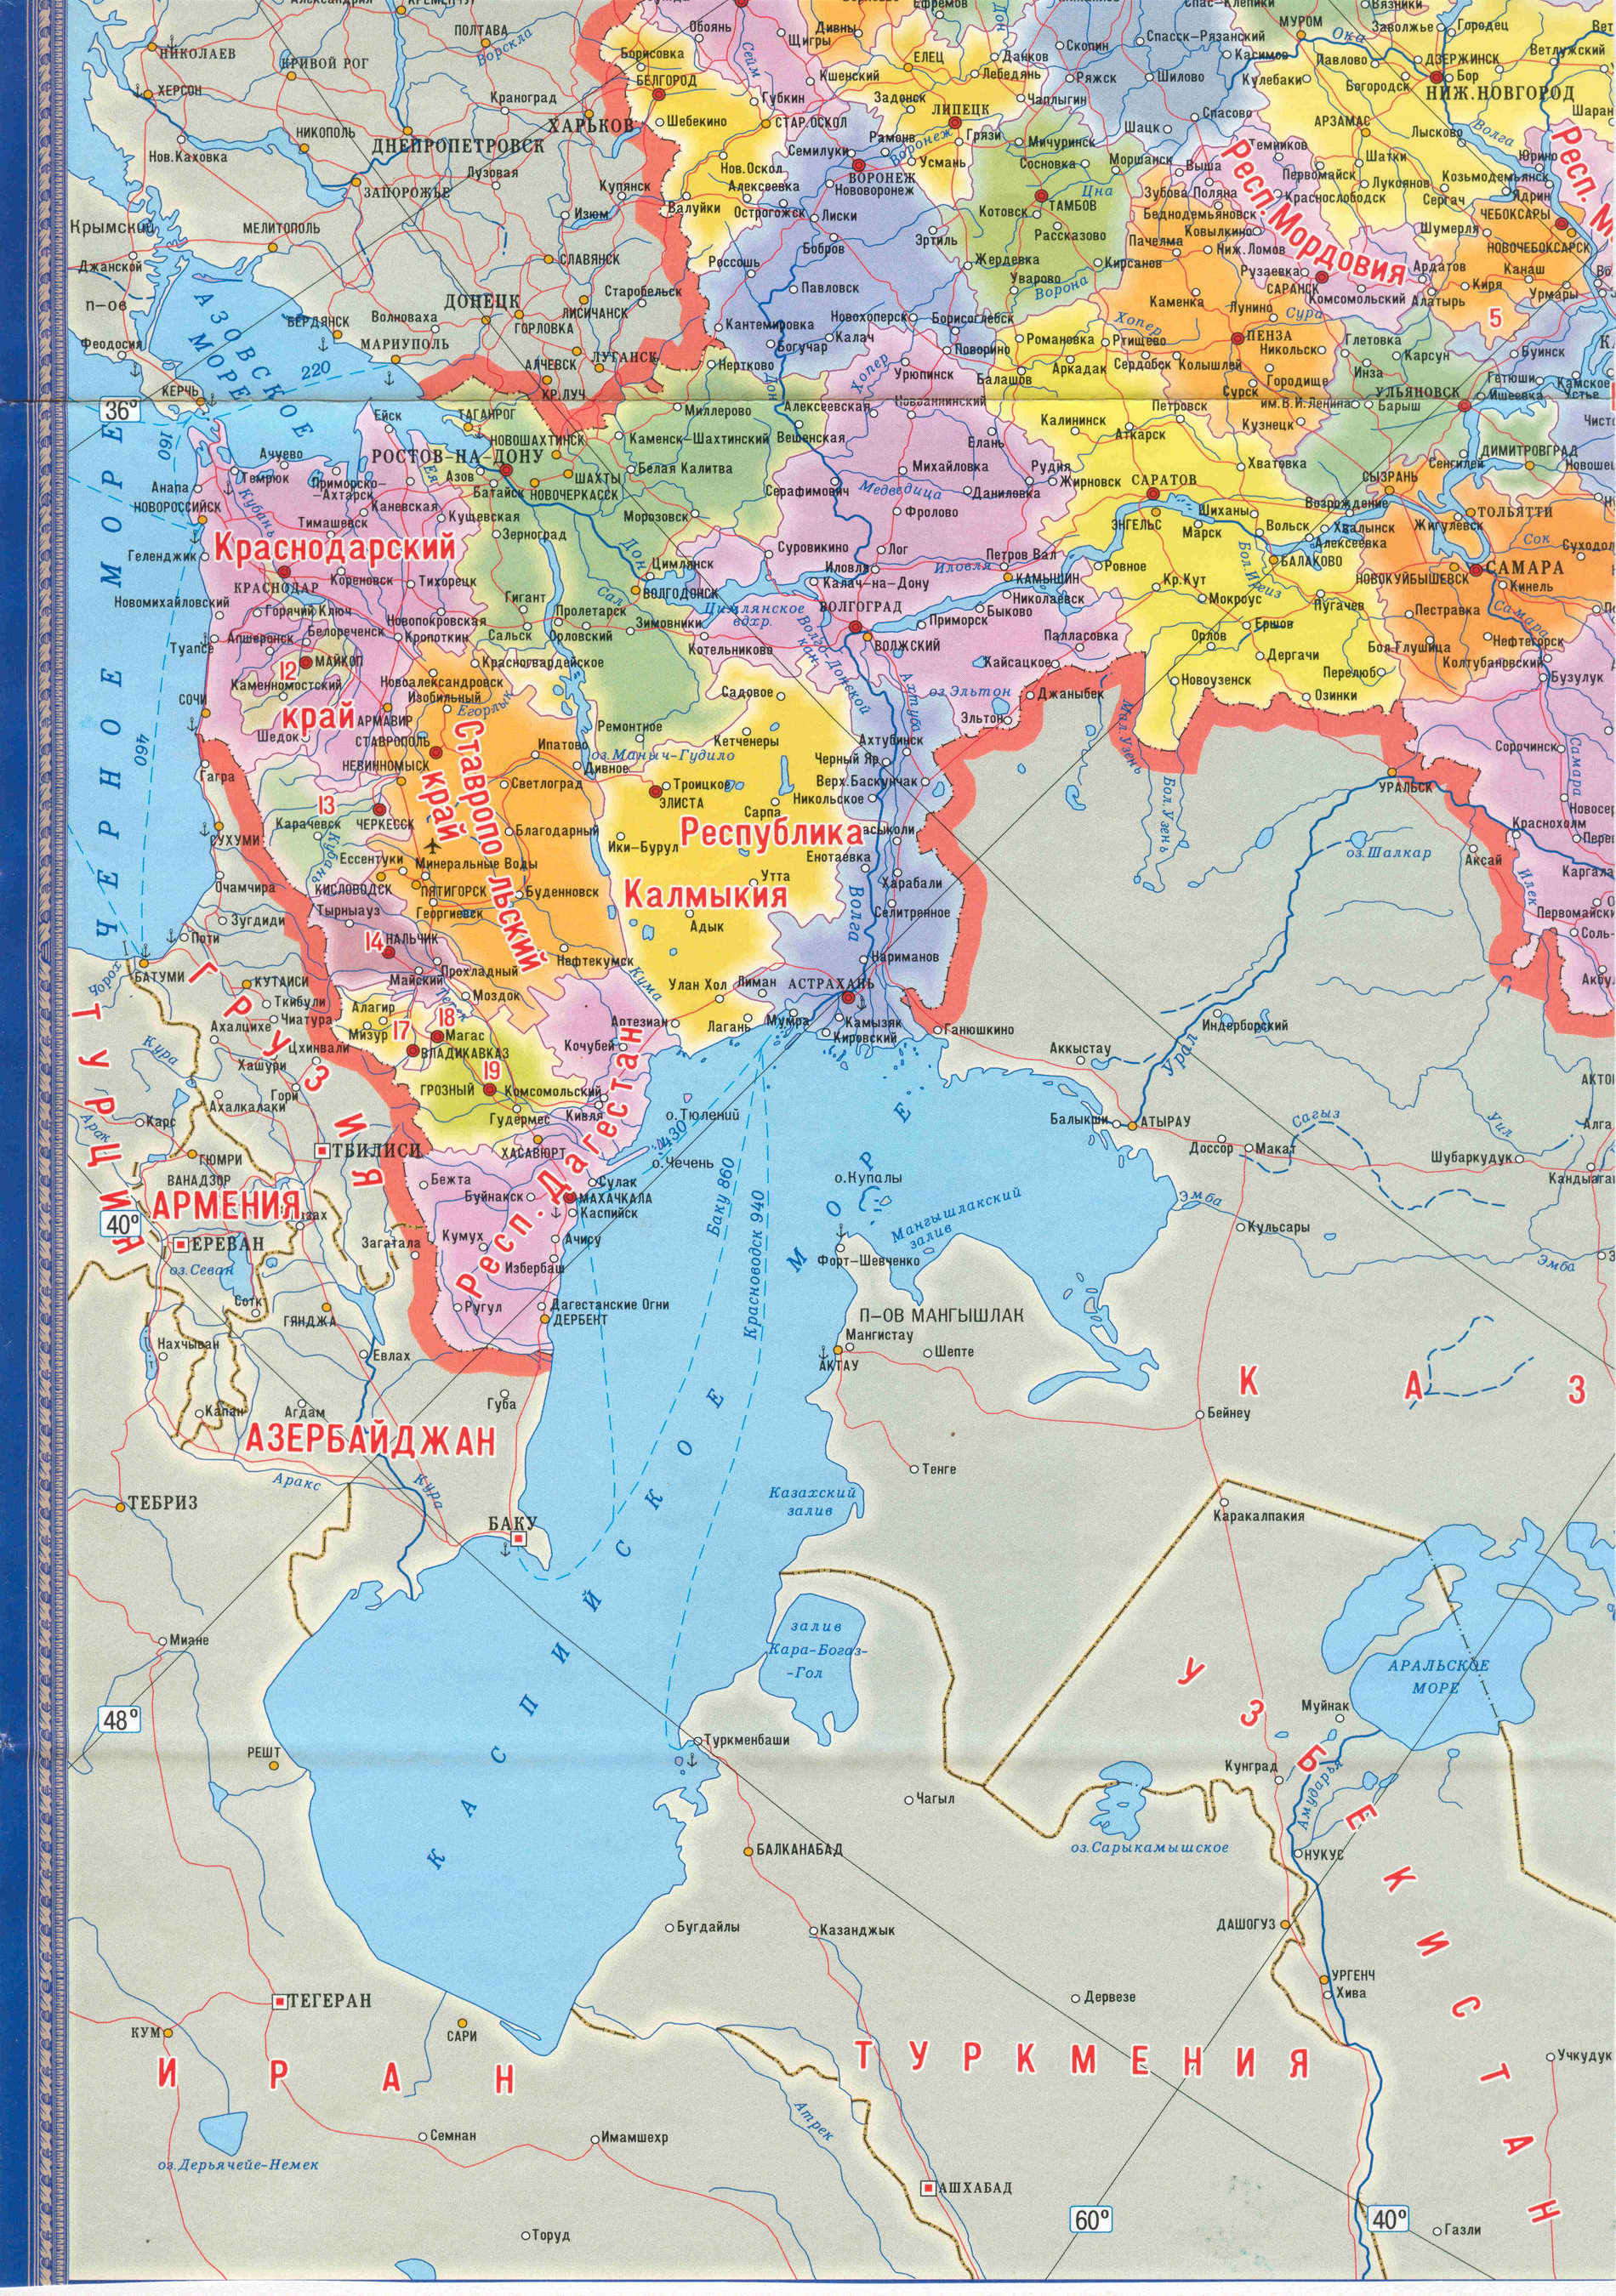 Подробная карта России. Подробная карта регионов России. Карта России с областями, республиками, краями, A1 - 